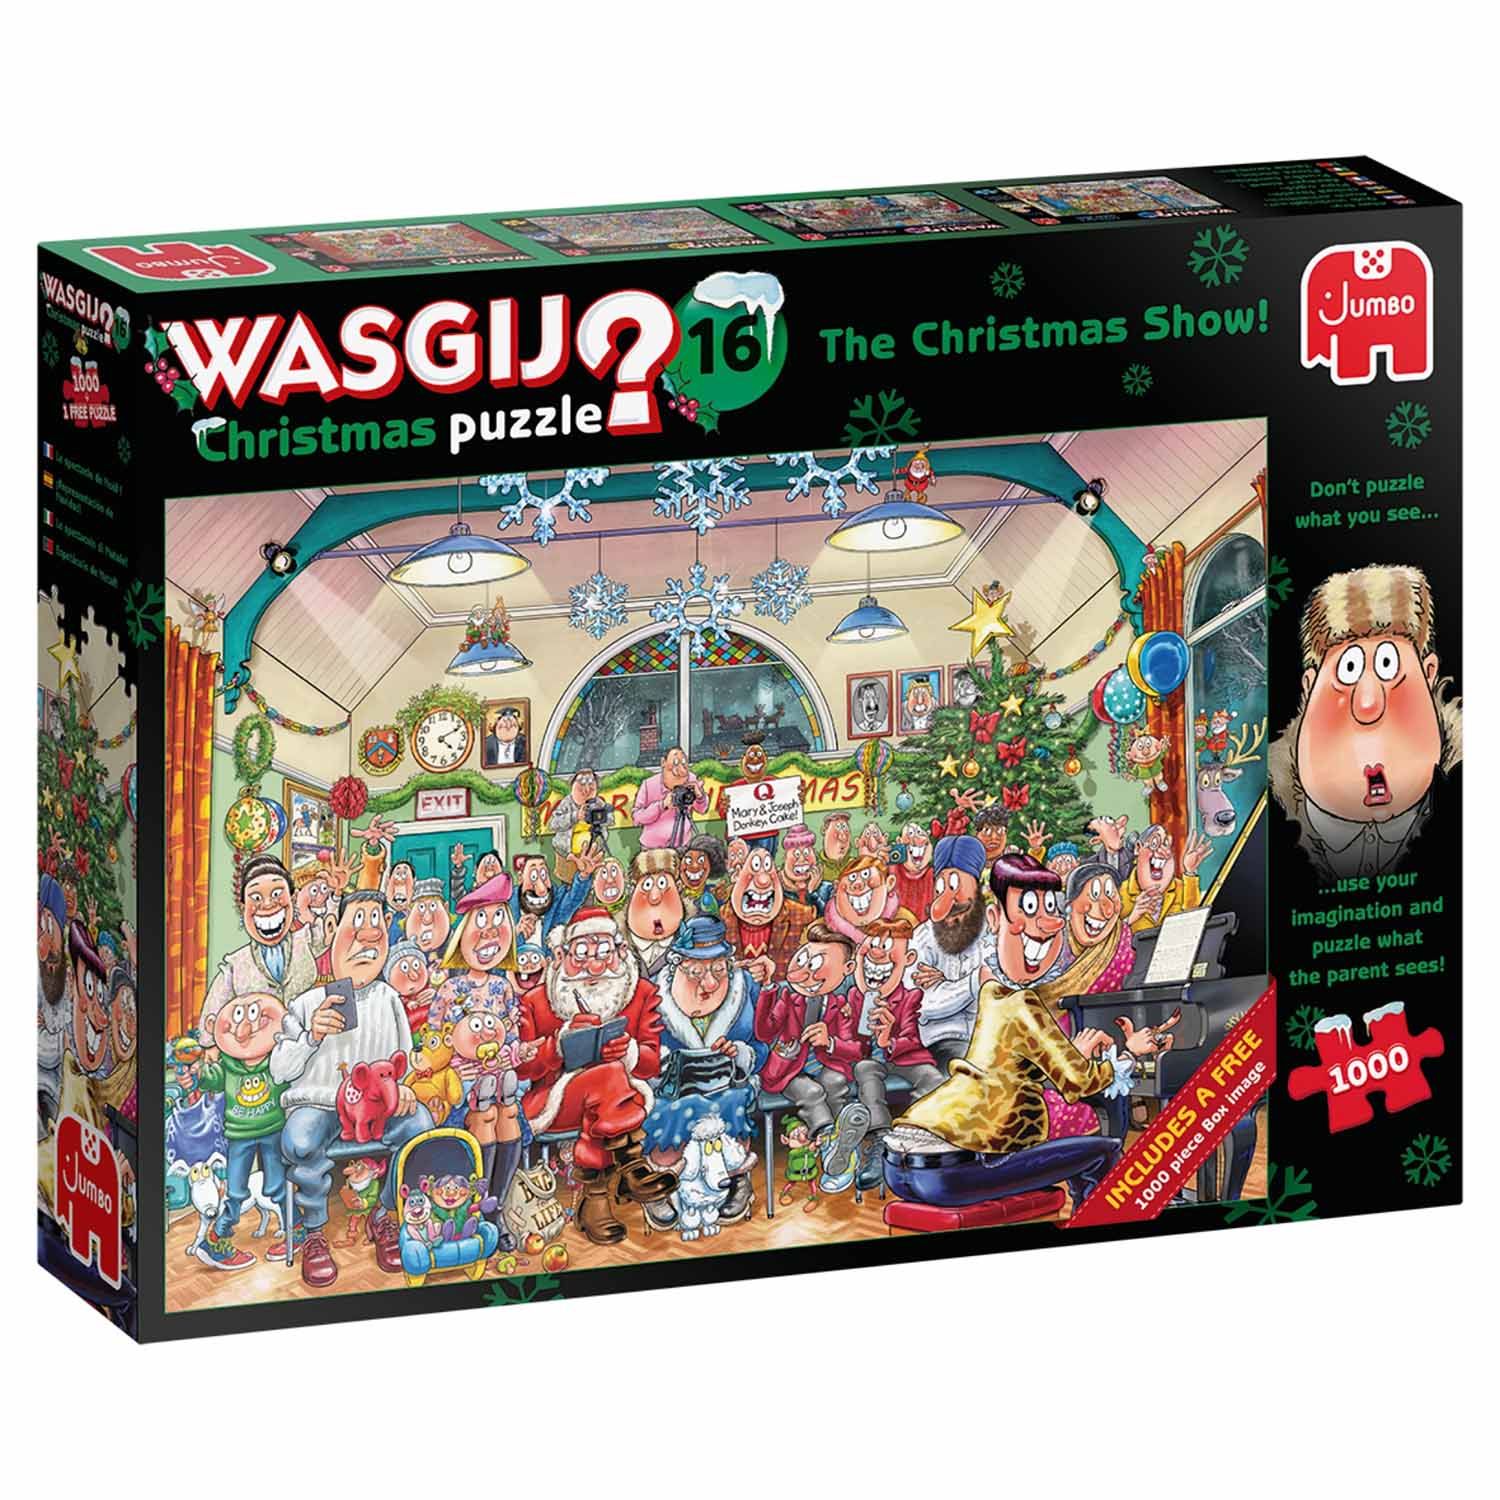 Wasgij Christmas 16: The Christmas Show!